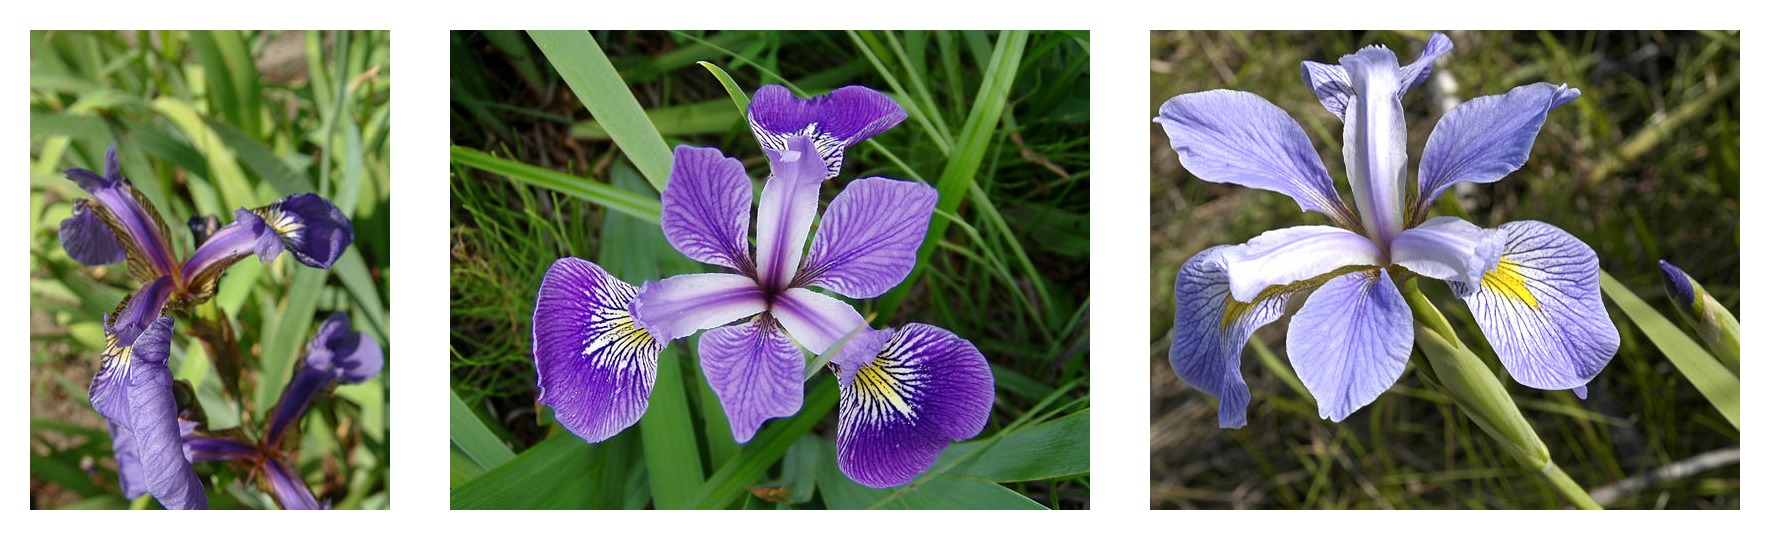 three iris species